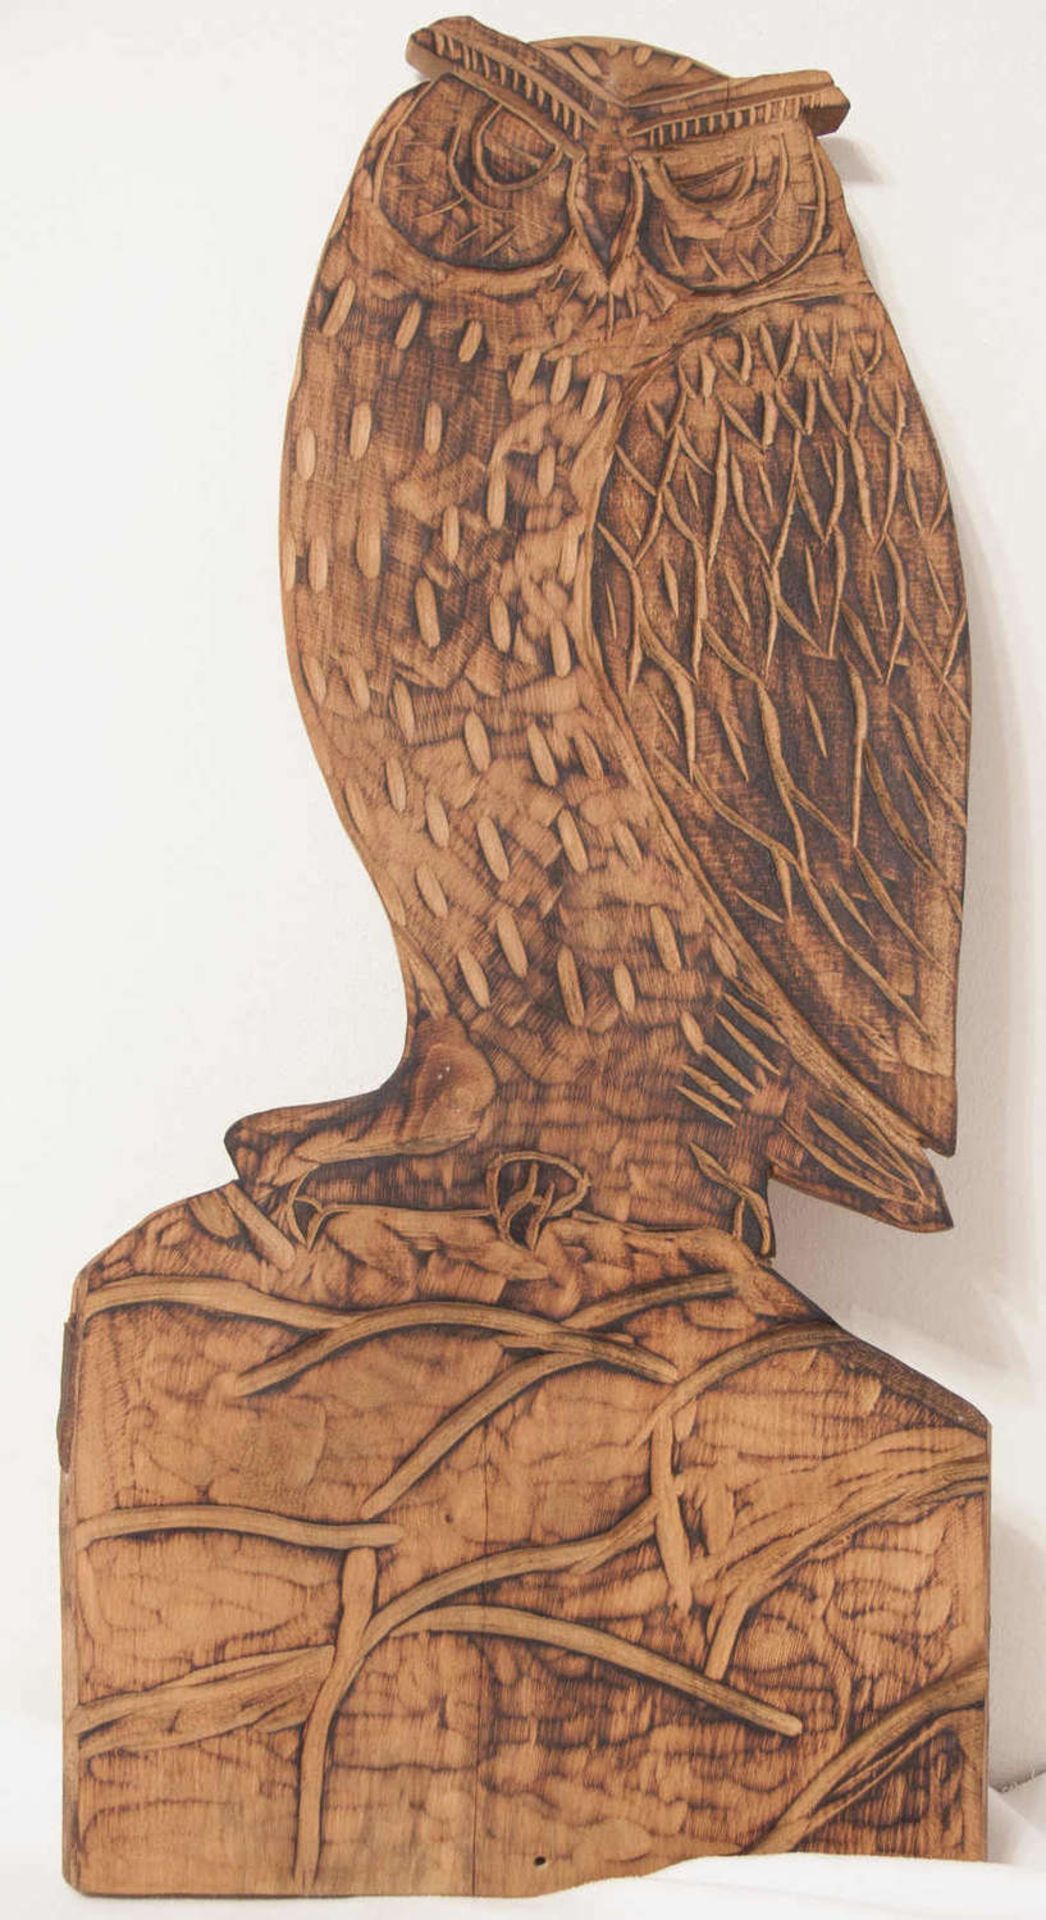 Holzrelief "Eule". Handgeschnitzt. Maße: ca. 83 cm x ca. 40 cm. Trocknungsriss am Sockel.Wooden